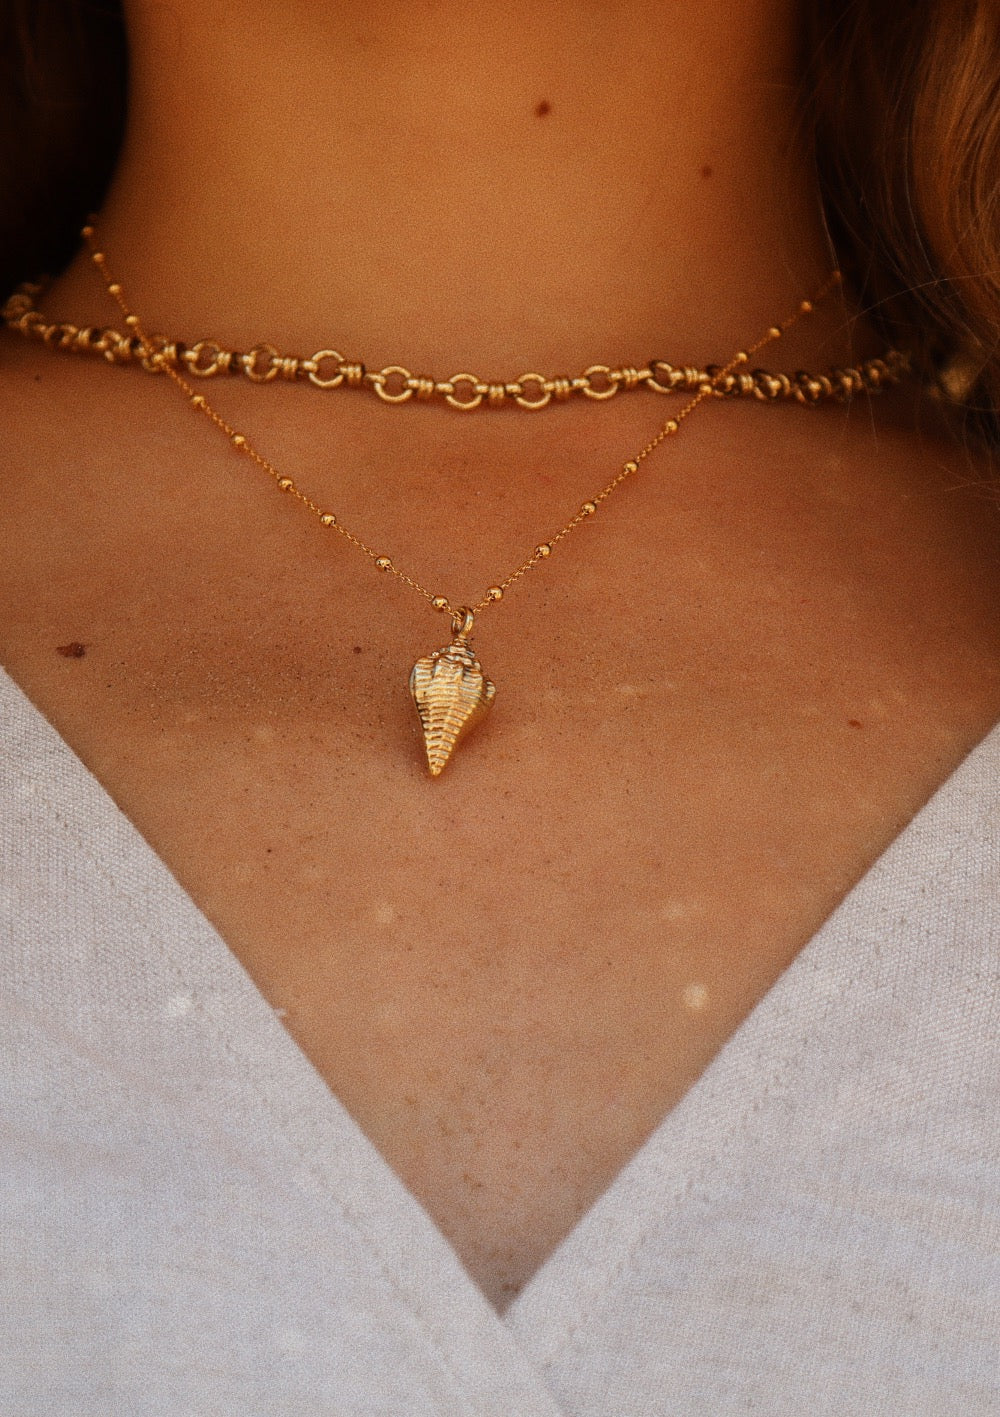 Sierra necklace - waekura